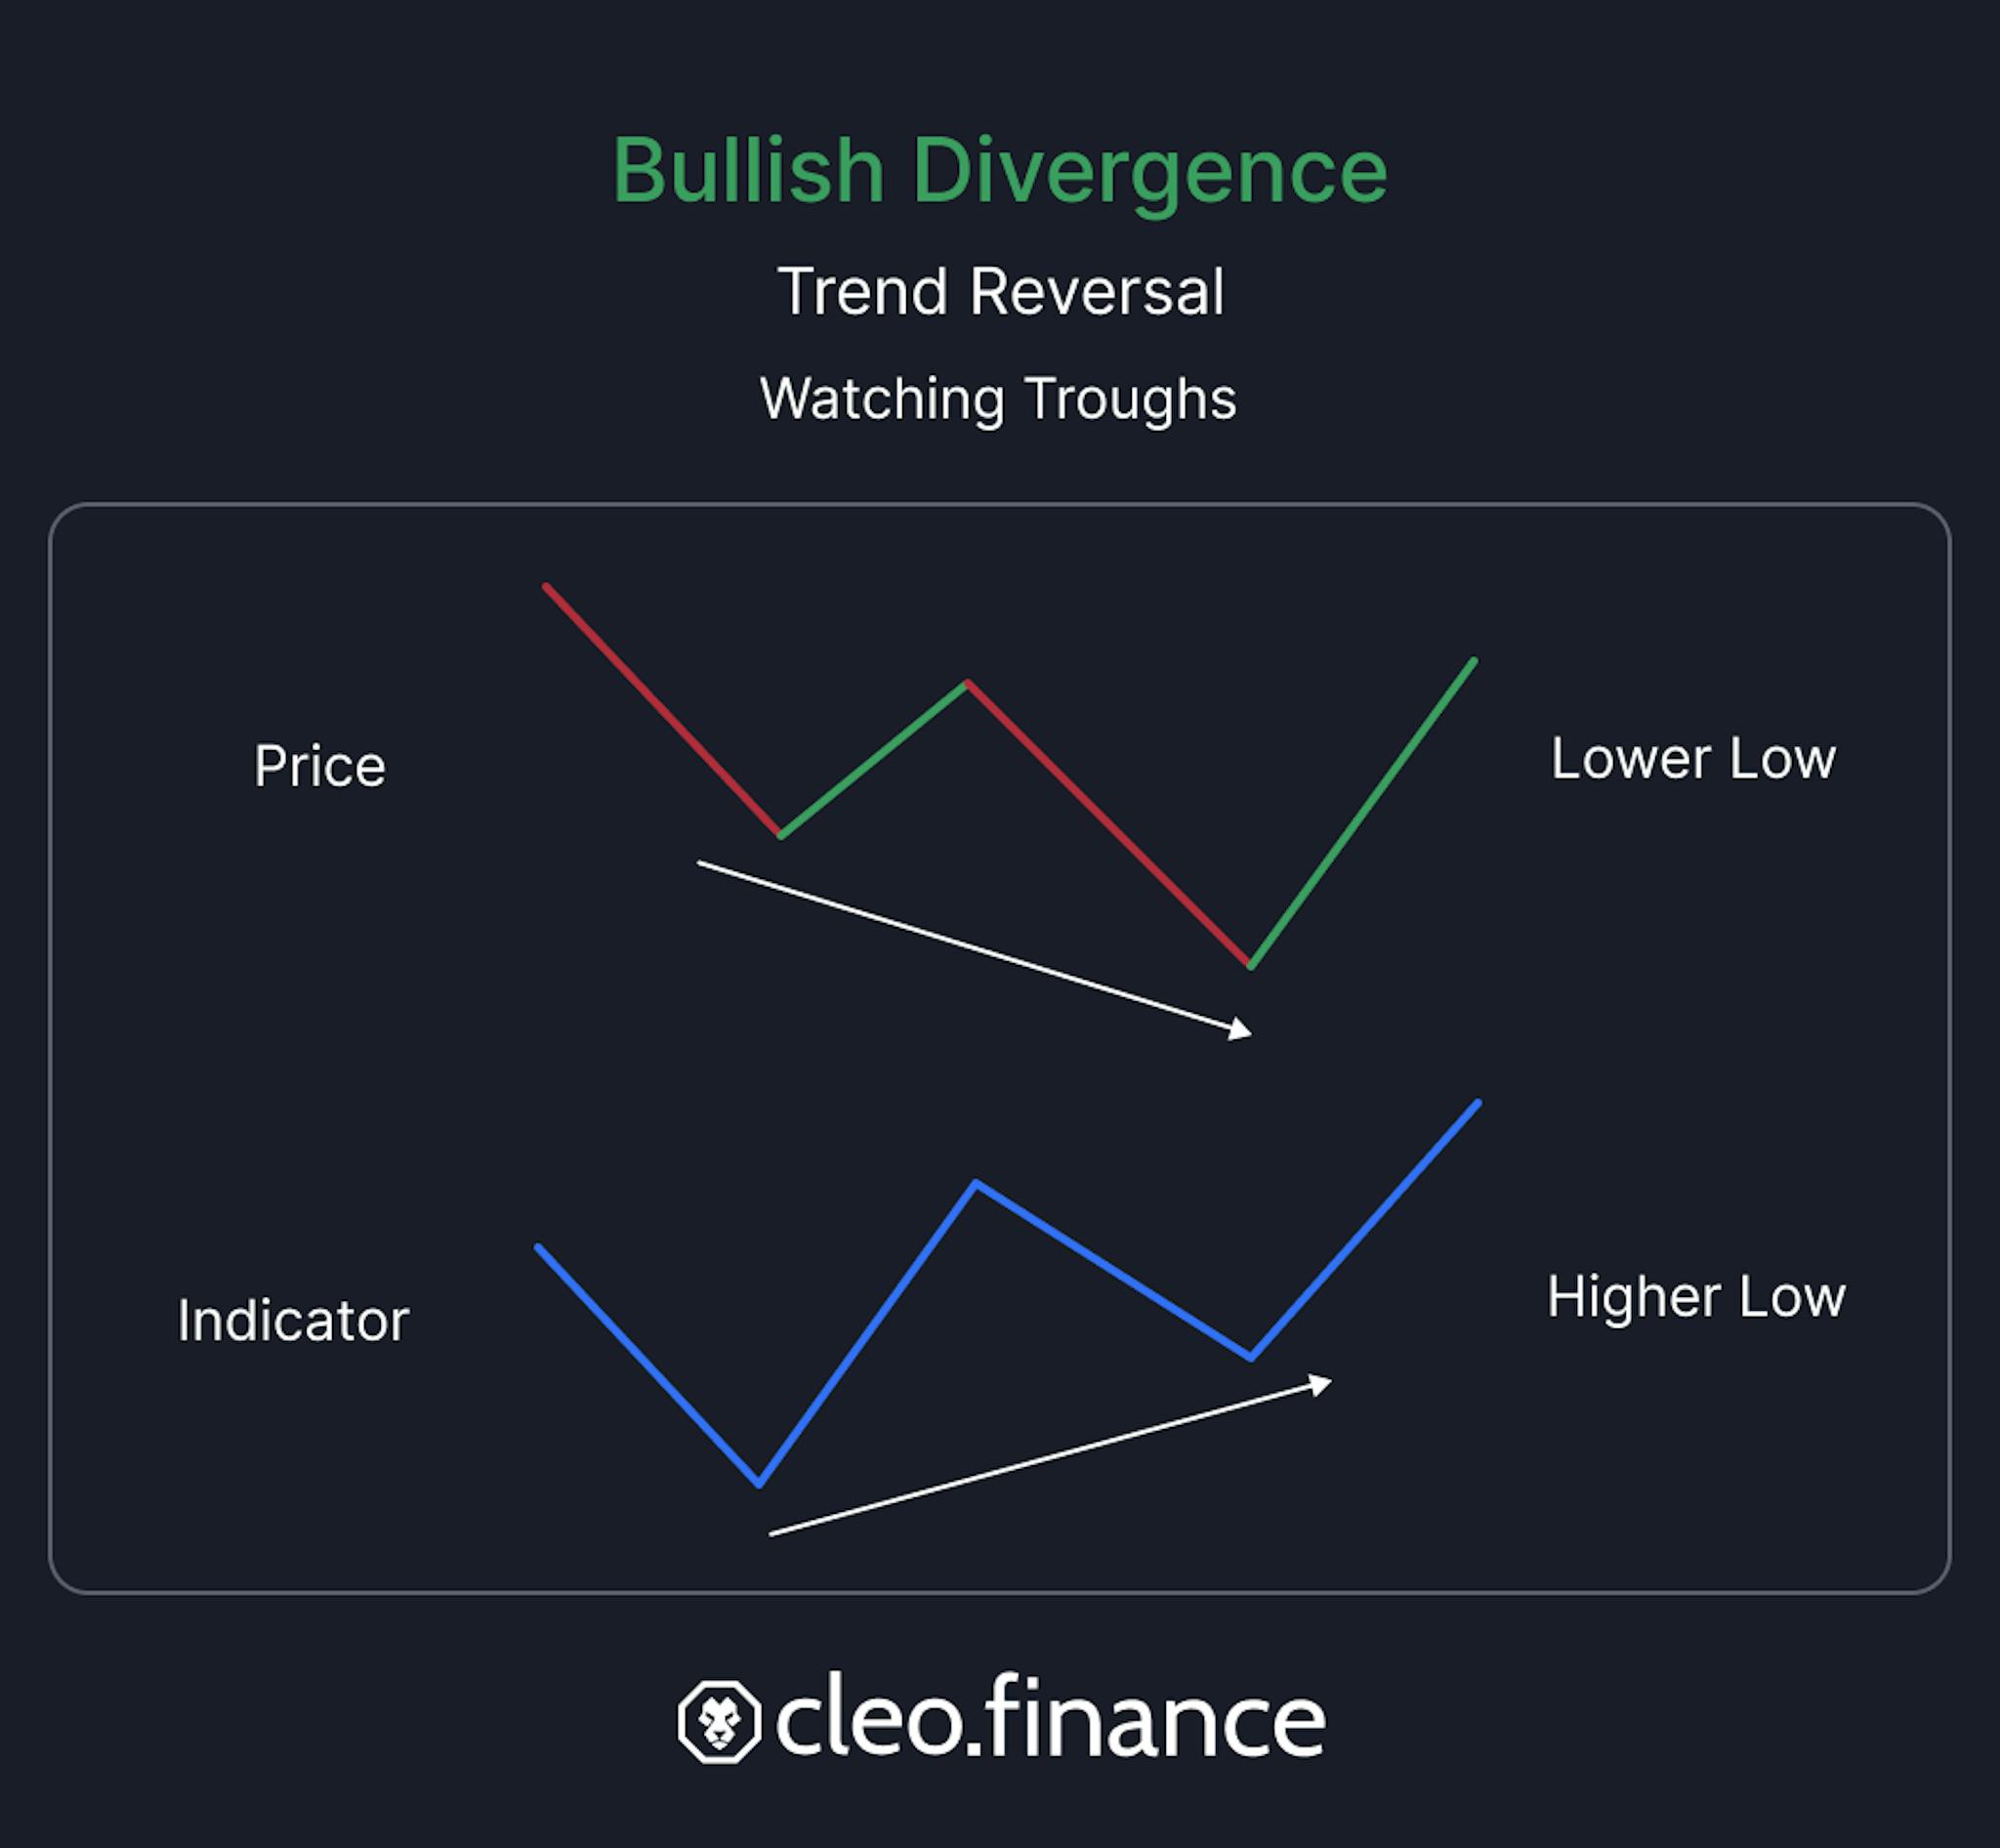 Bullish Divergence explanation